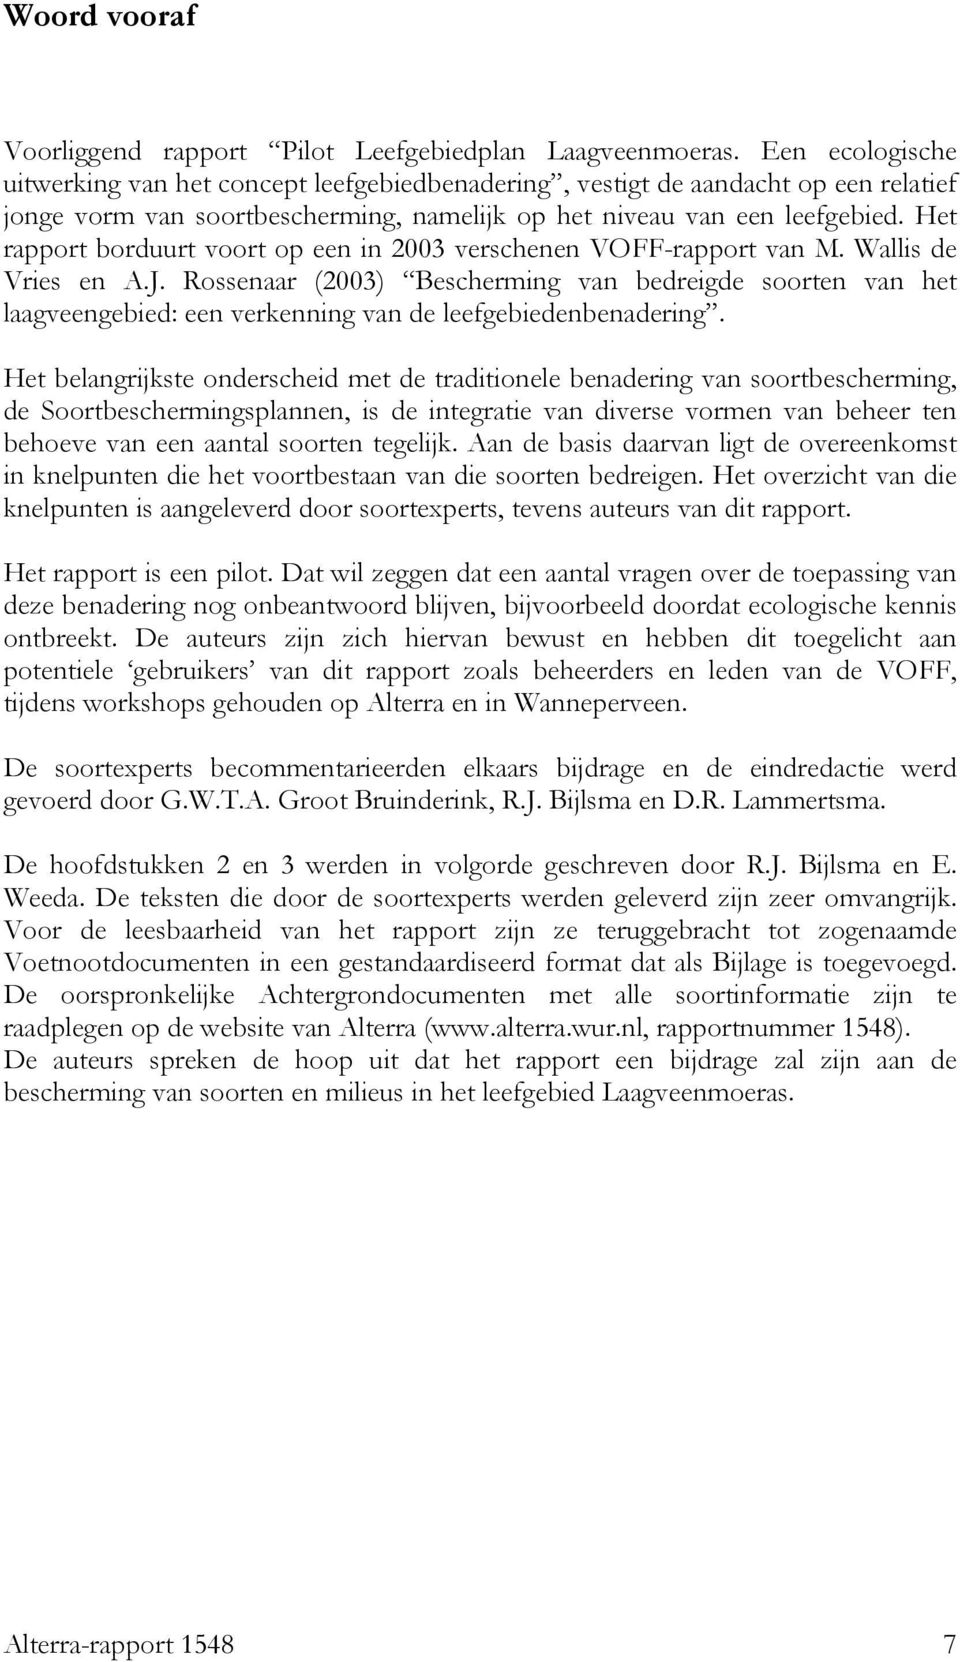 Het rapport borduurt voort op een in 2003 verschenen VOFF-rapport van M. Wallis de Vries en A.J.